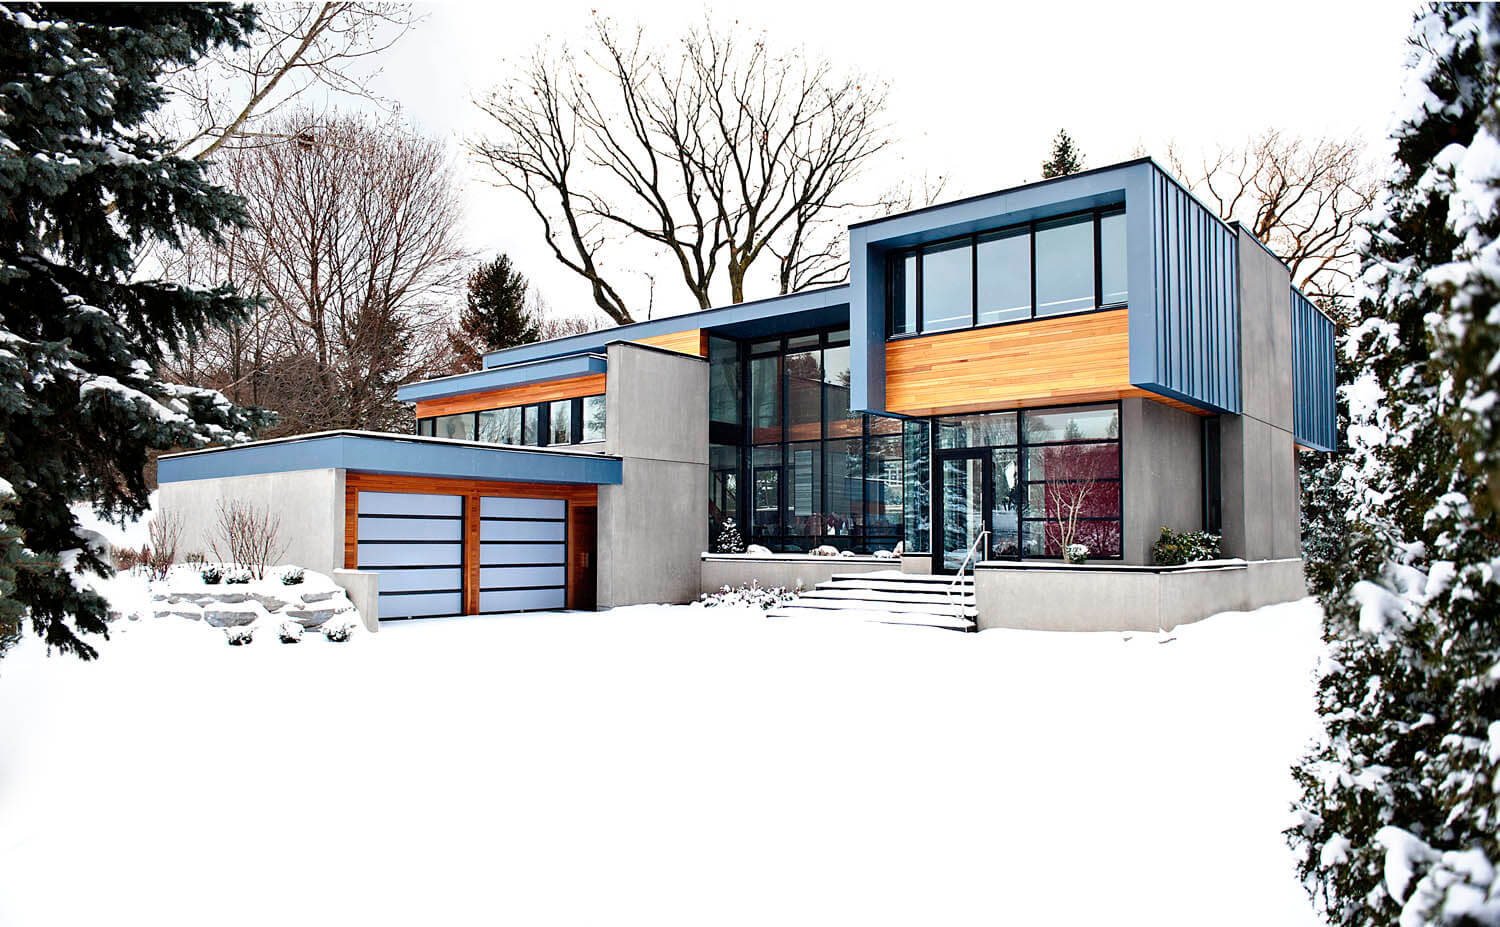 与第一张图形成对比的是，我们在这里看到了冬天的房子，在整个外部展示了大胆、明亮的色调，搭配蓝色锌、西班牙雪松和混凝土，形成了真正的现代存在。